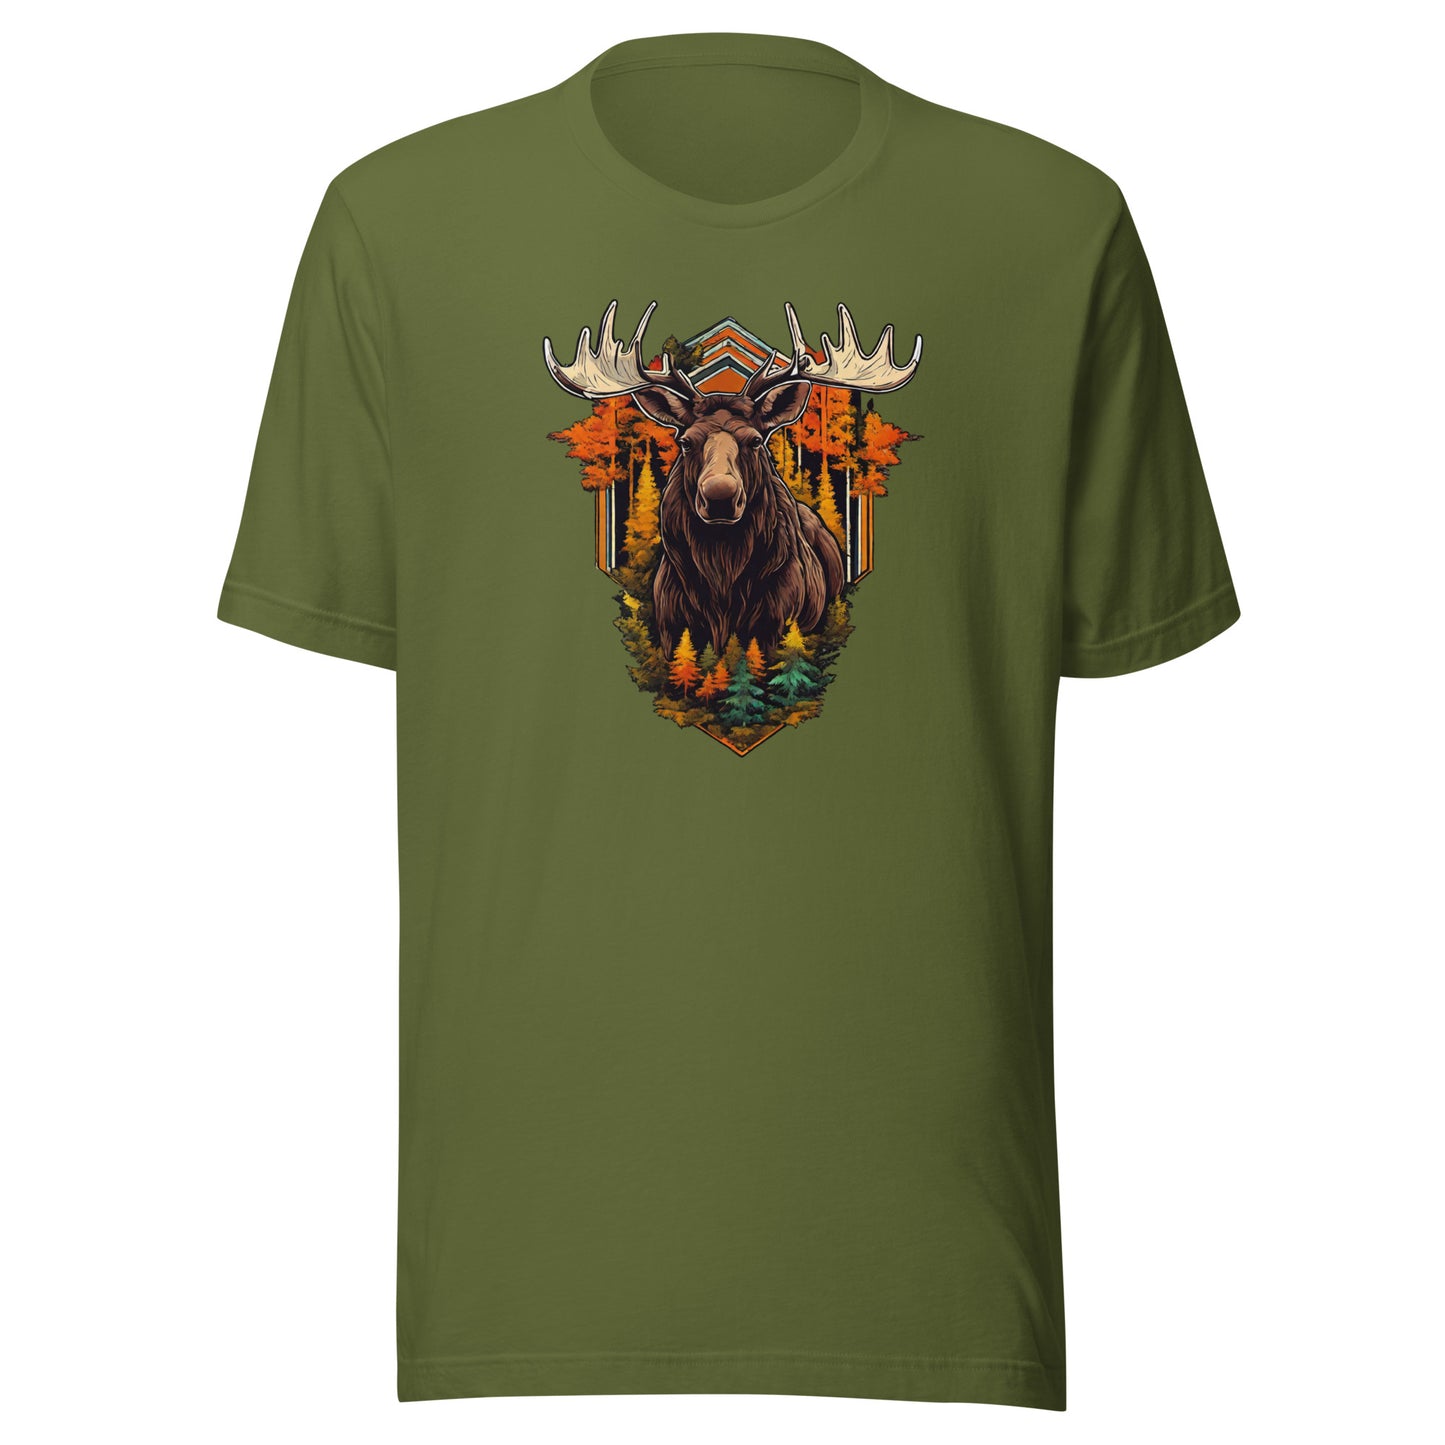 Moose & Forest Emblem Men's T-Shirt Olive